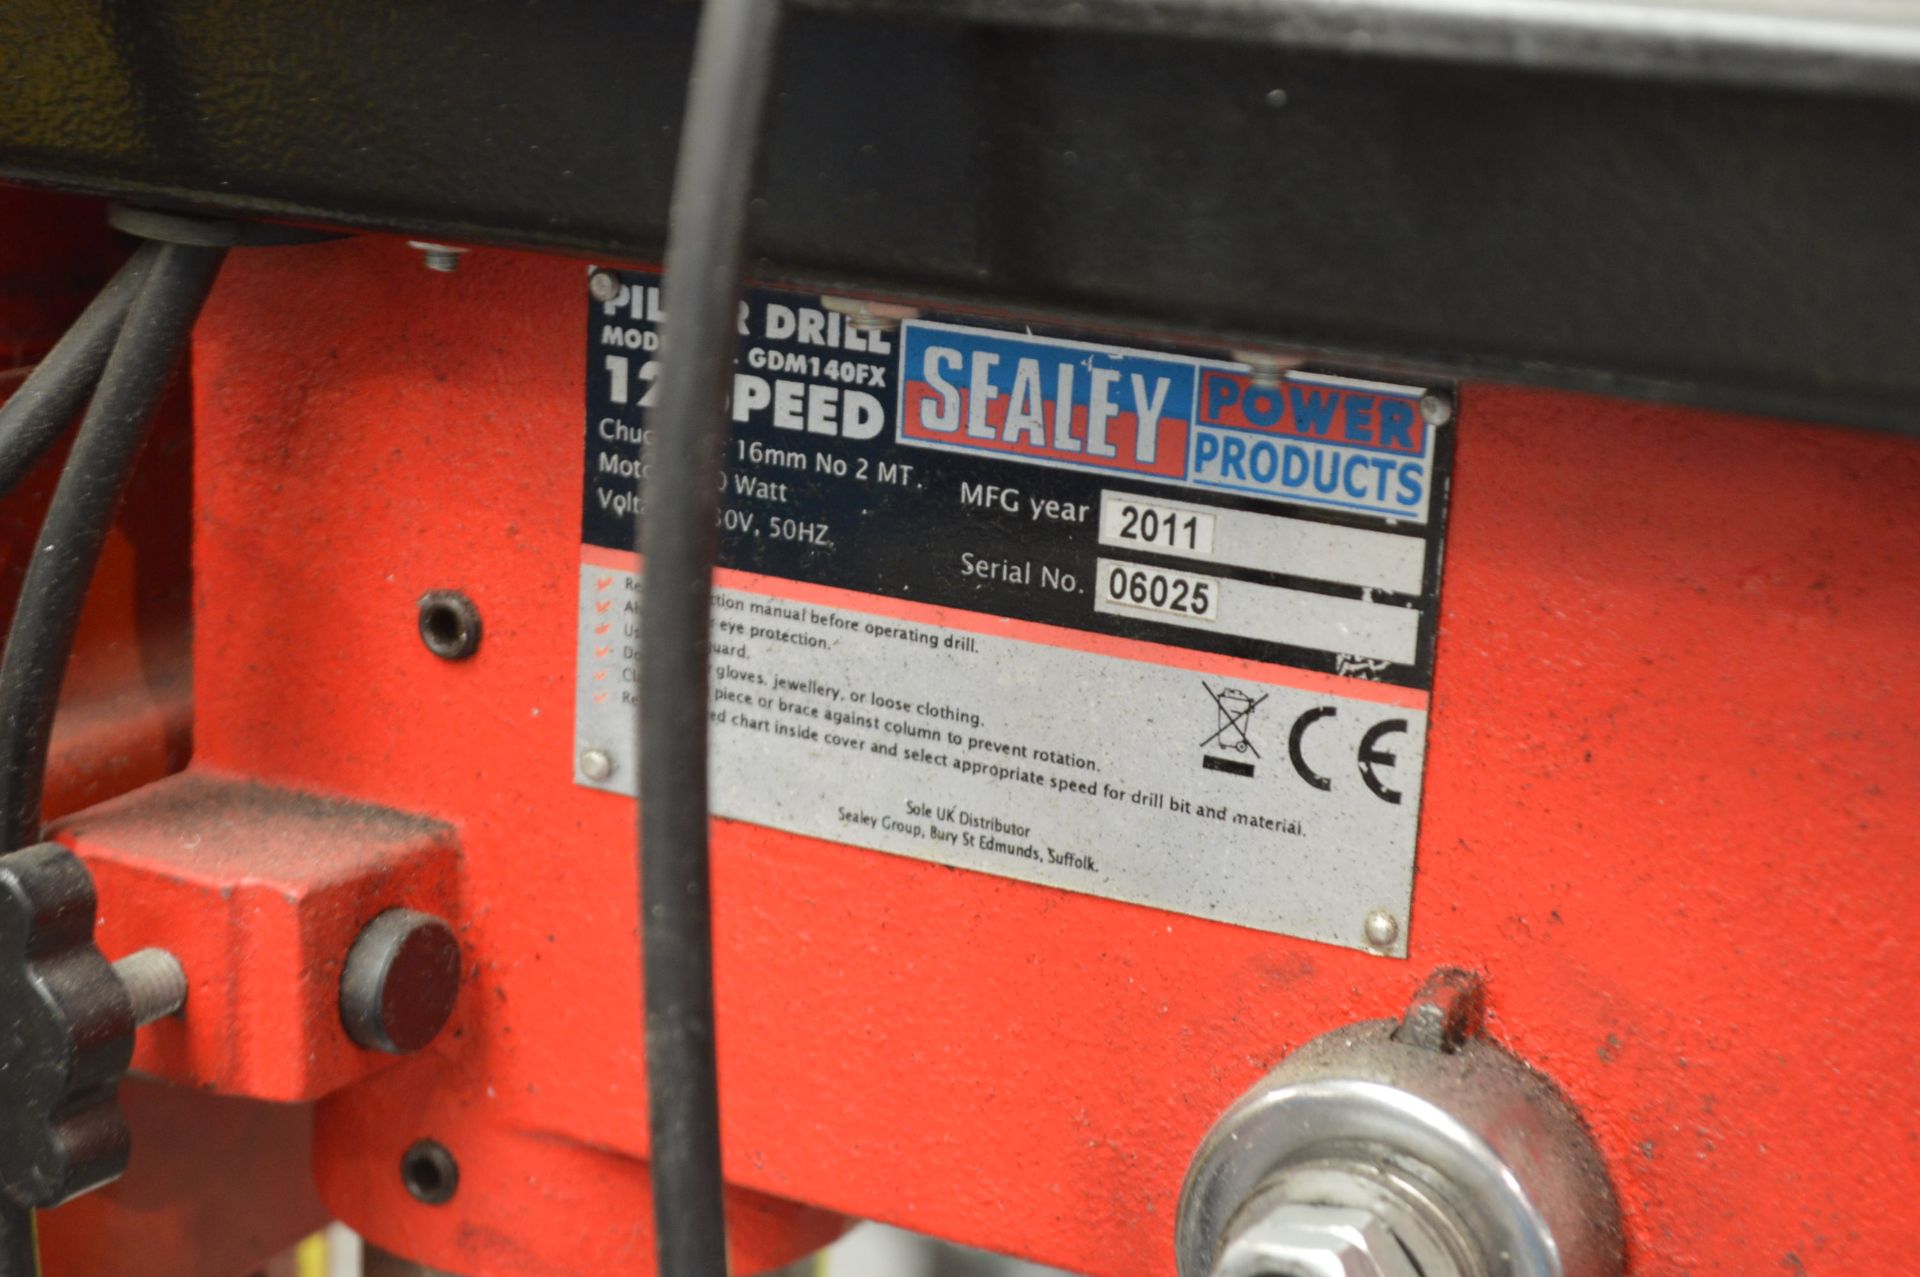 Sealey GDM 140EX 12 Speed Pillar Drill, serial no. - Image 3 of 3